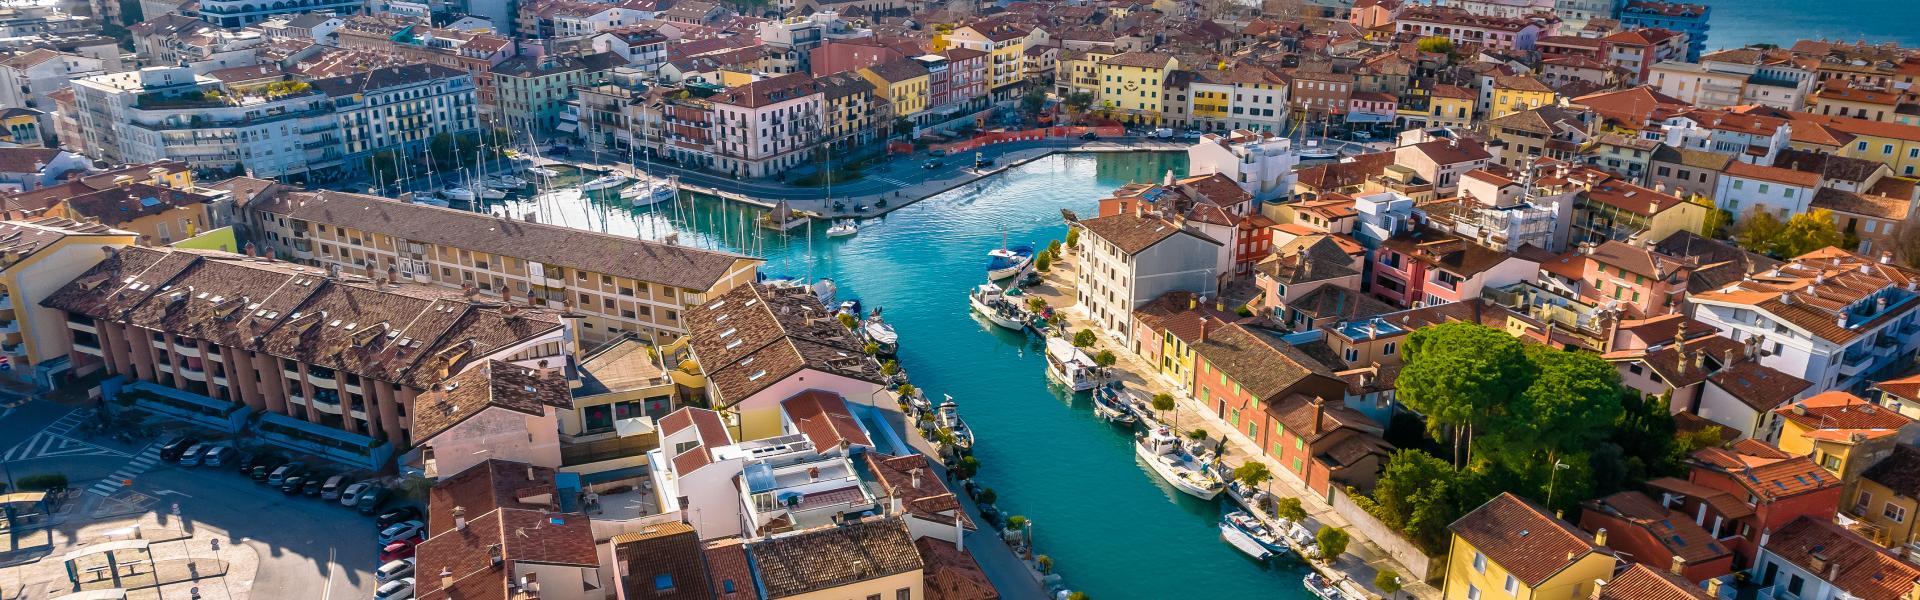 Friuli Venezia Giulia Scenic View